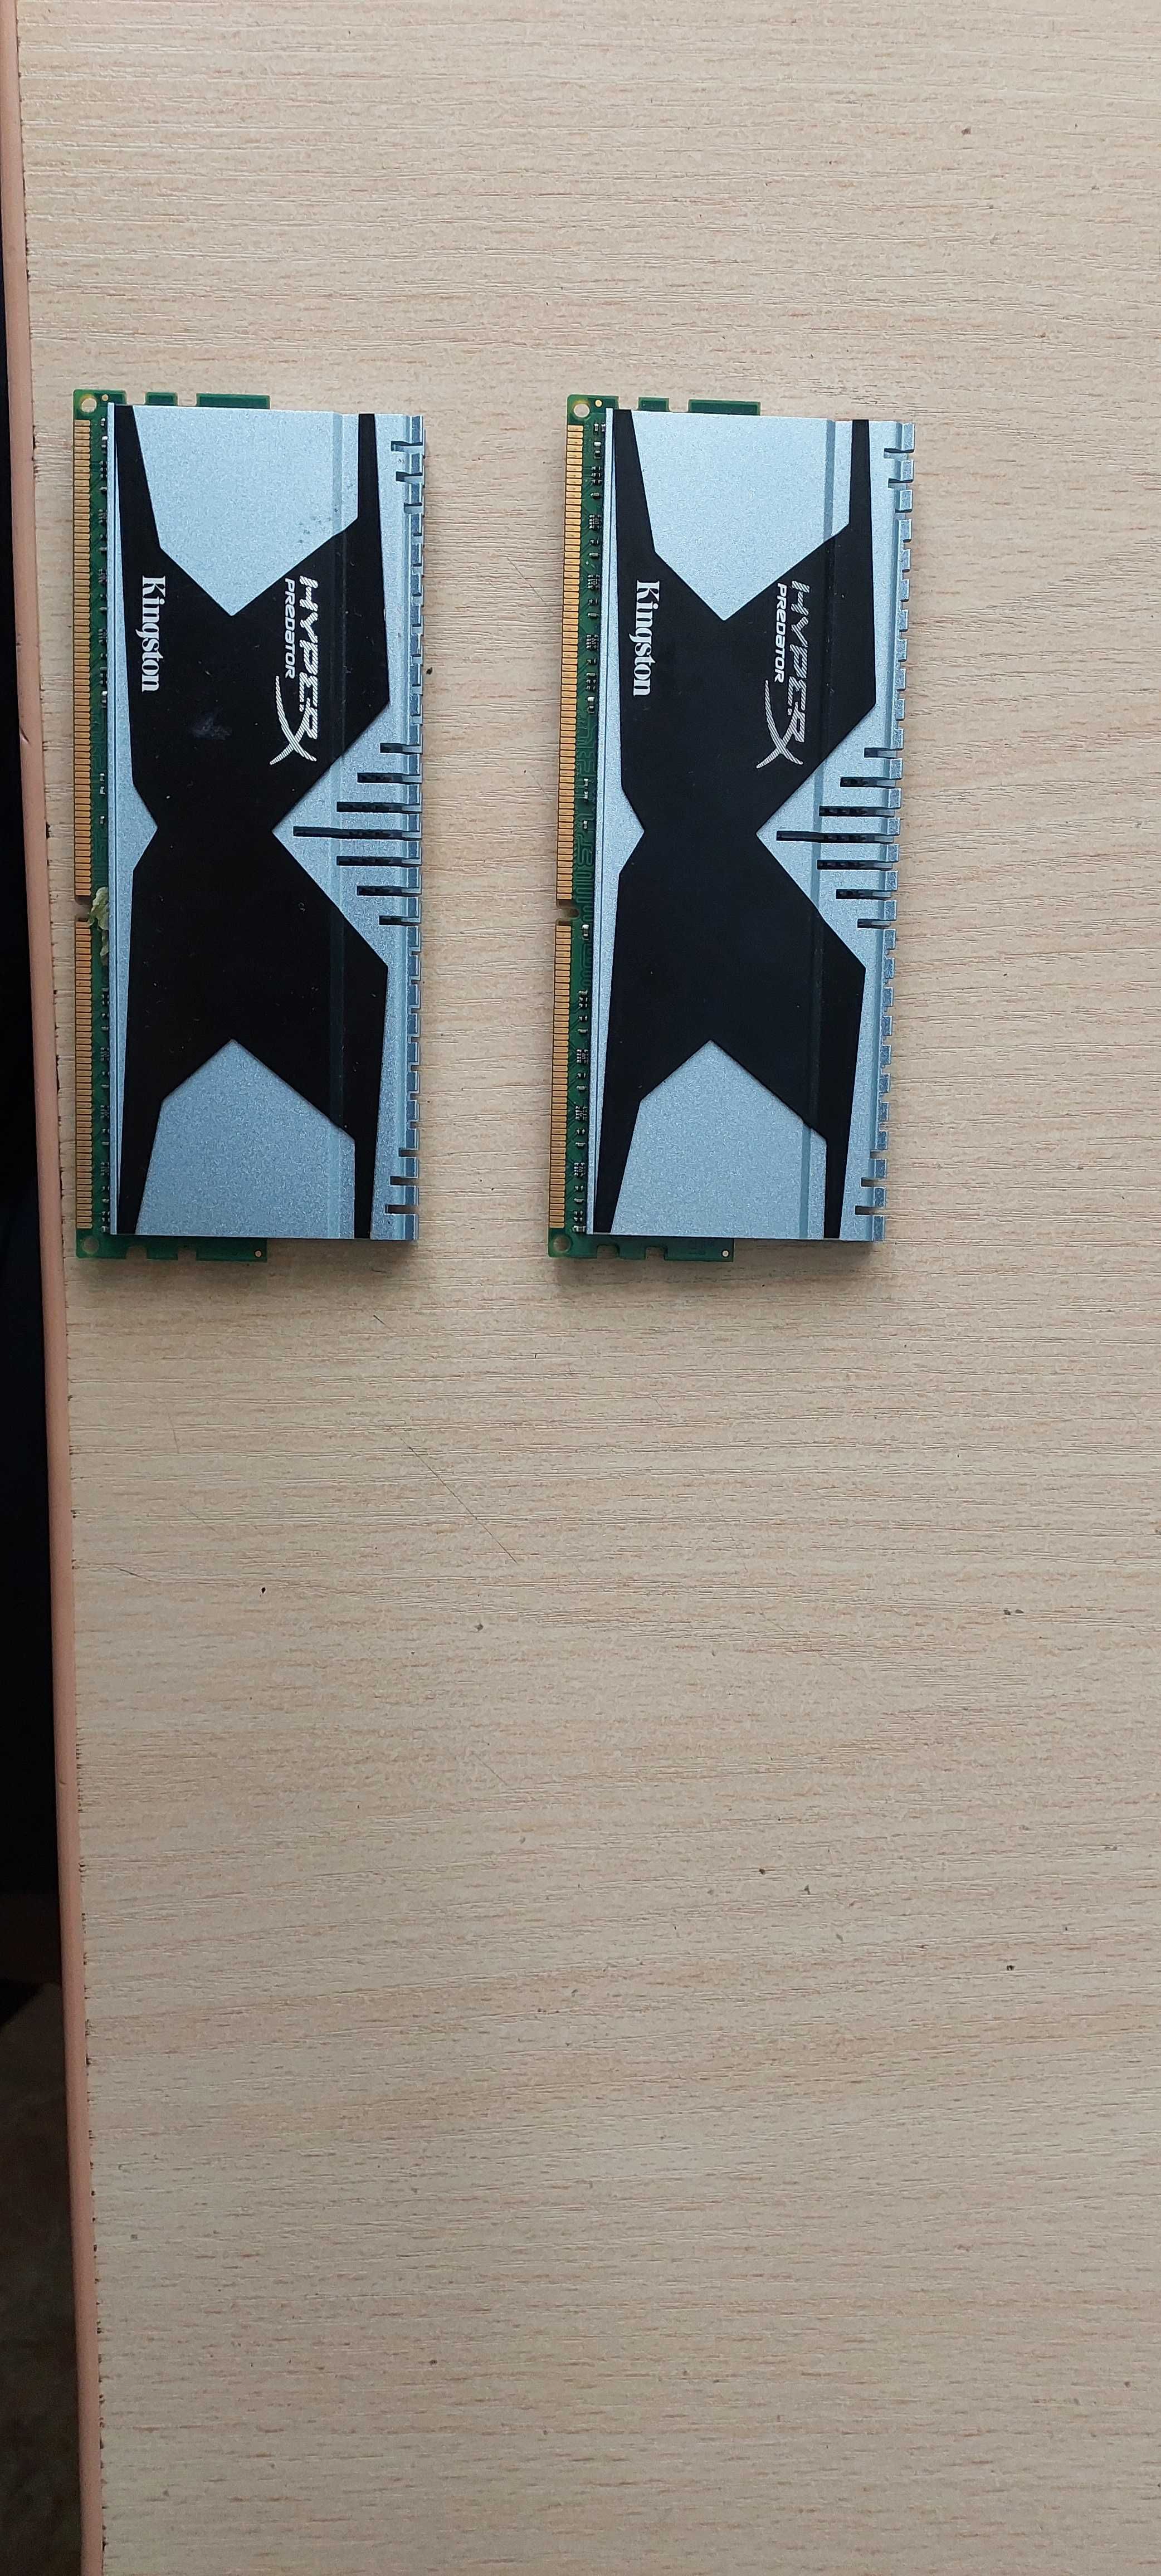 HyperX 16 GB (2x8GB) DDR3